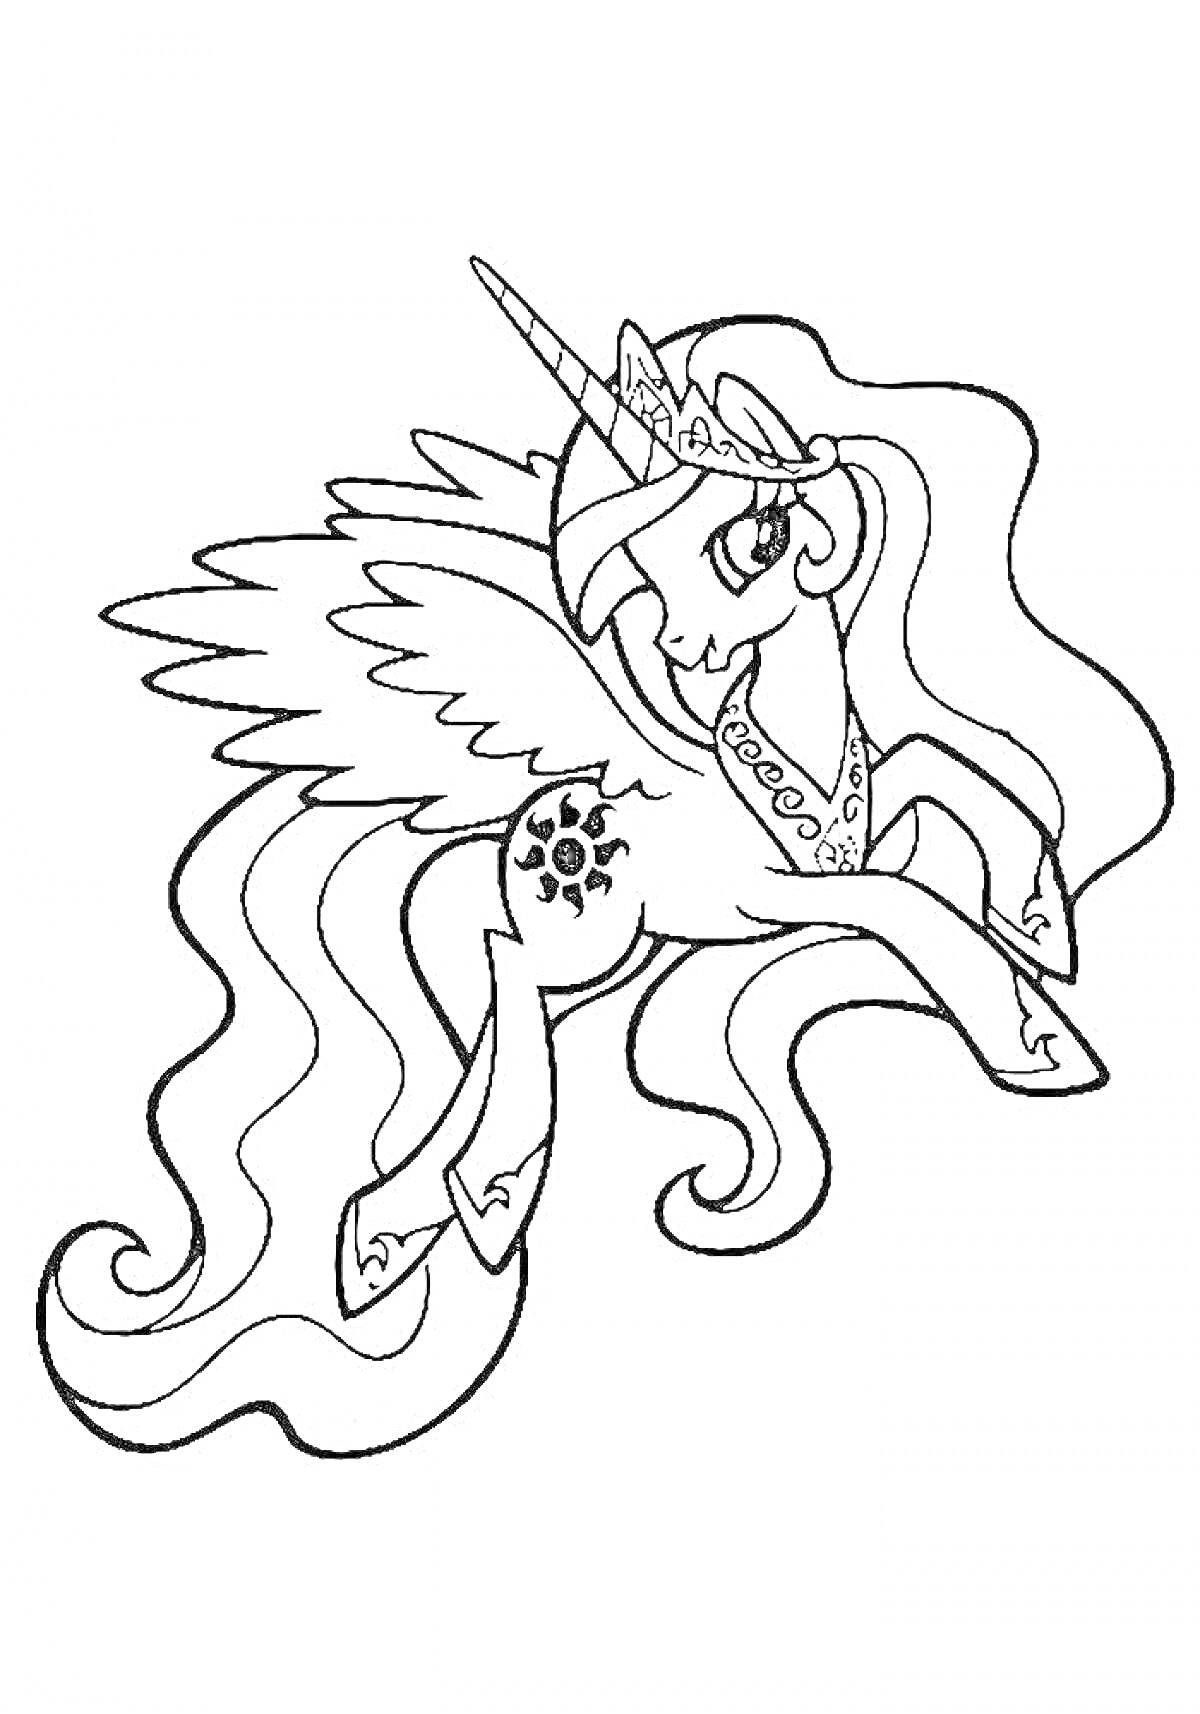 Раскраска Принцесса Селестия с длинными развевающимися волосами, короной, рогом, крыльями и солнцем на бедре